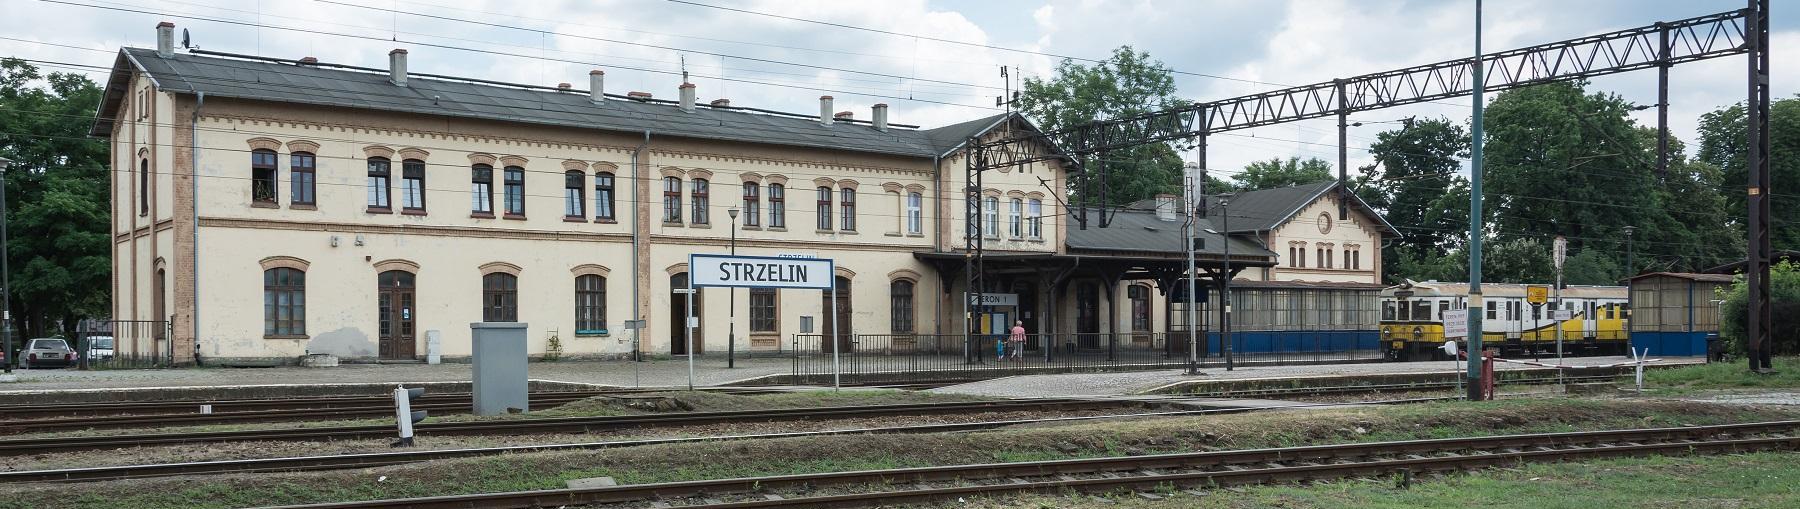 Modernizacja dworca kolejowego w Strzelinie. Fot. Jacek Halicki/Wikimedia